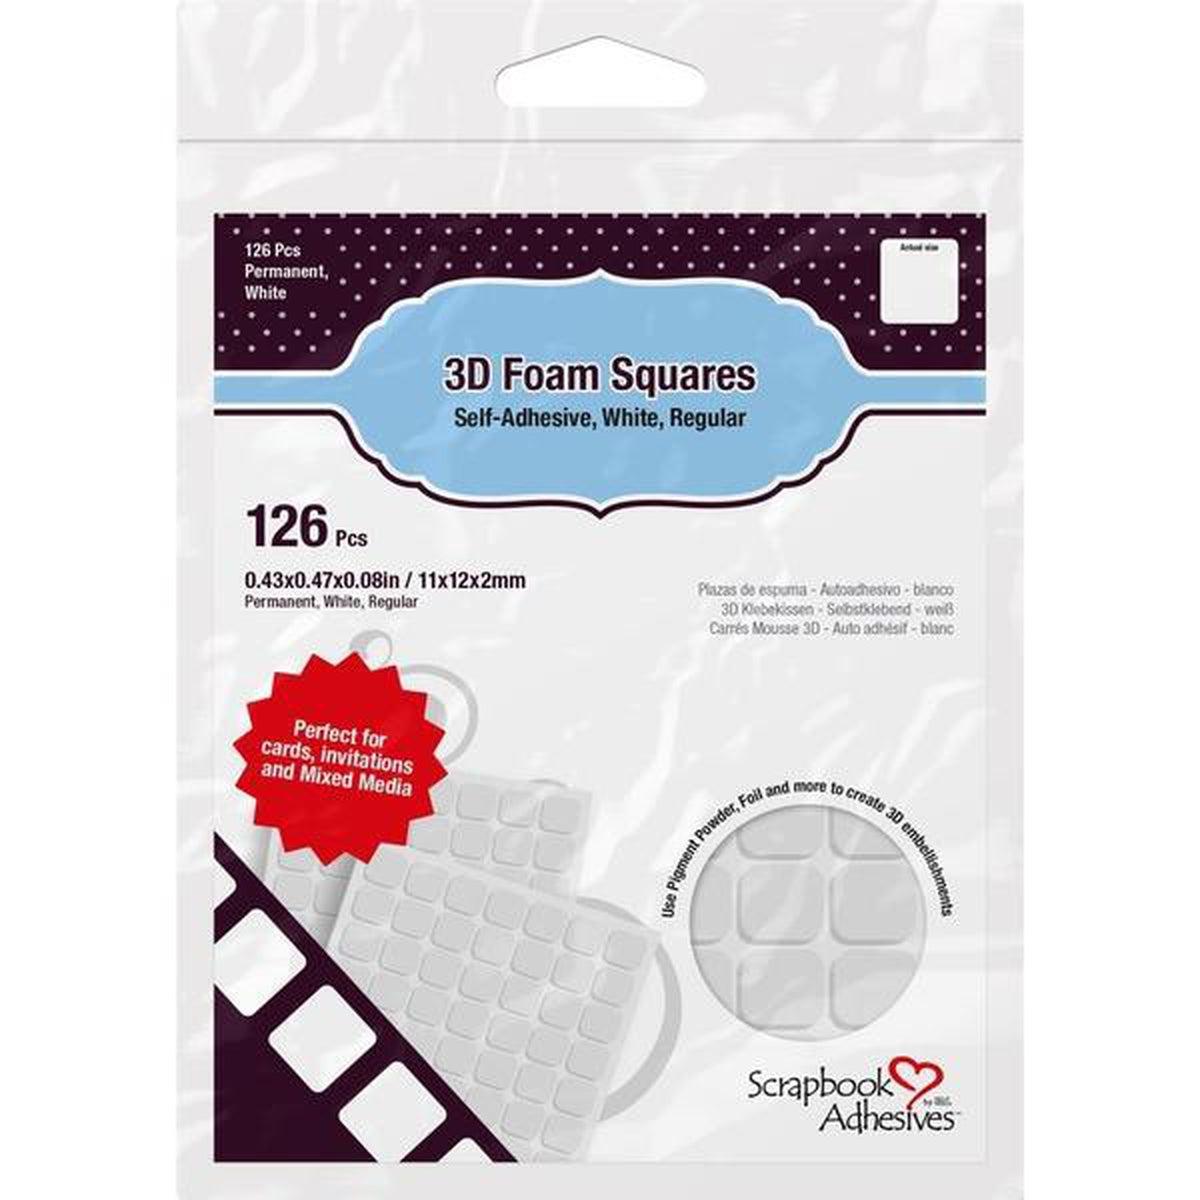 Scrapbook Adhesives 3D Self-Adhesive Foam Squares 126/Pkg - Kat Scrappiness